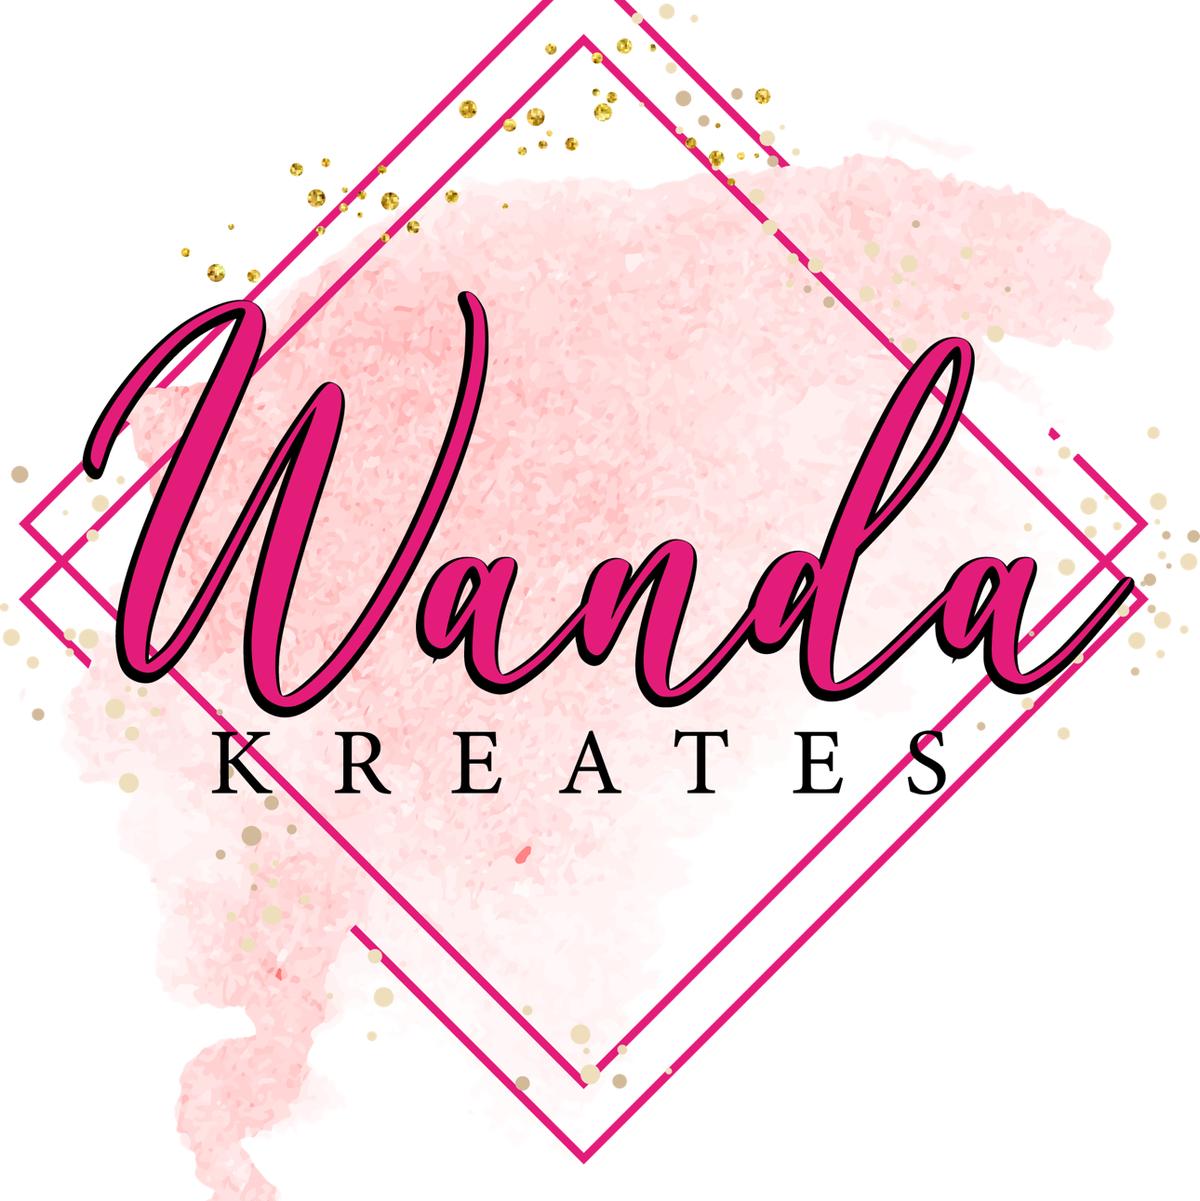 Wanda Kreates